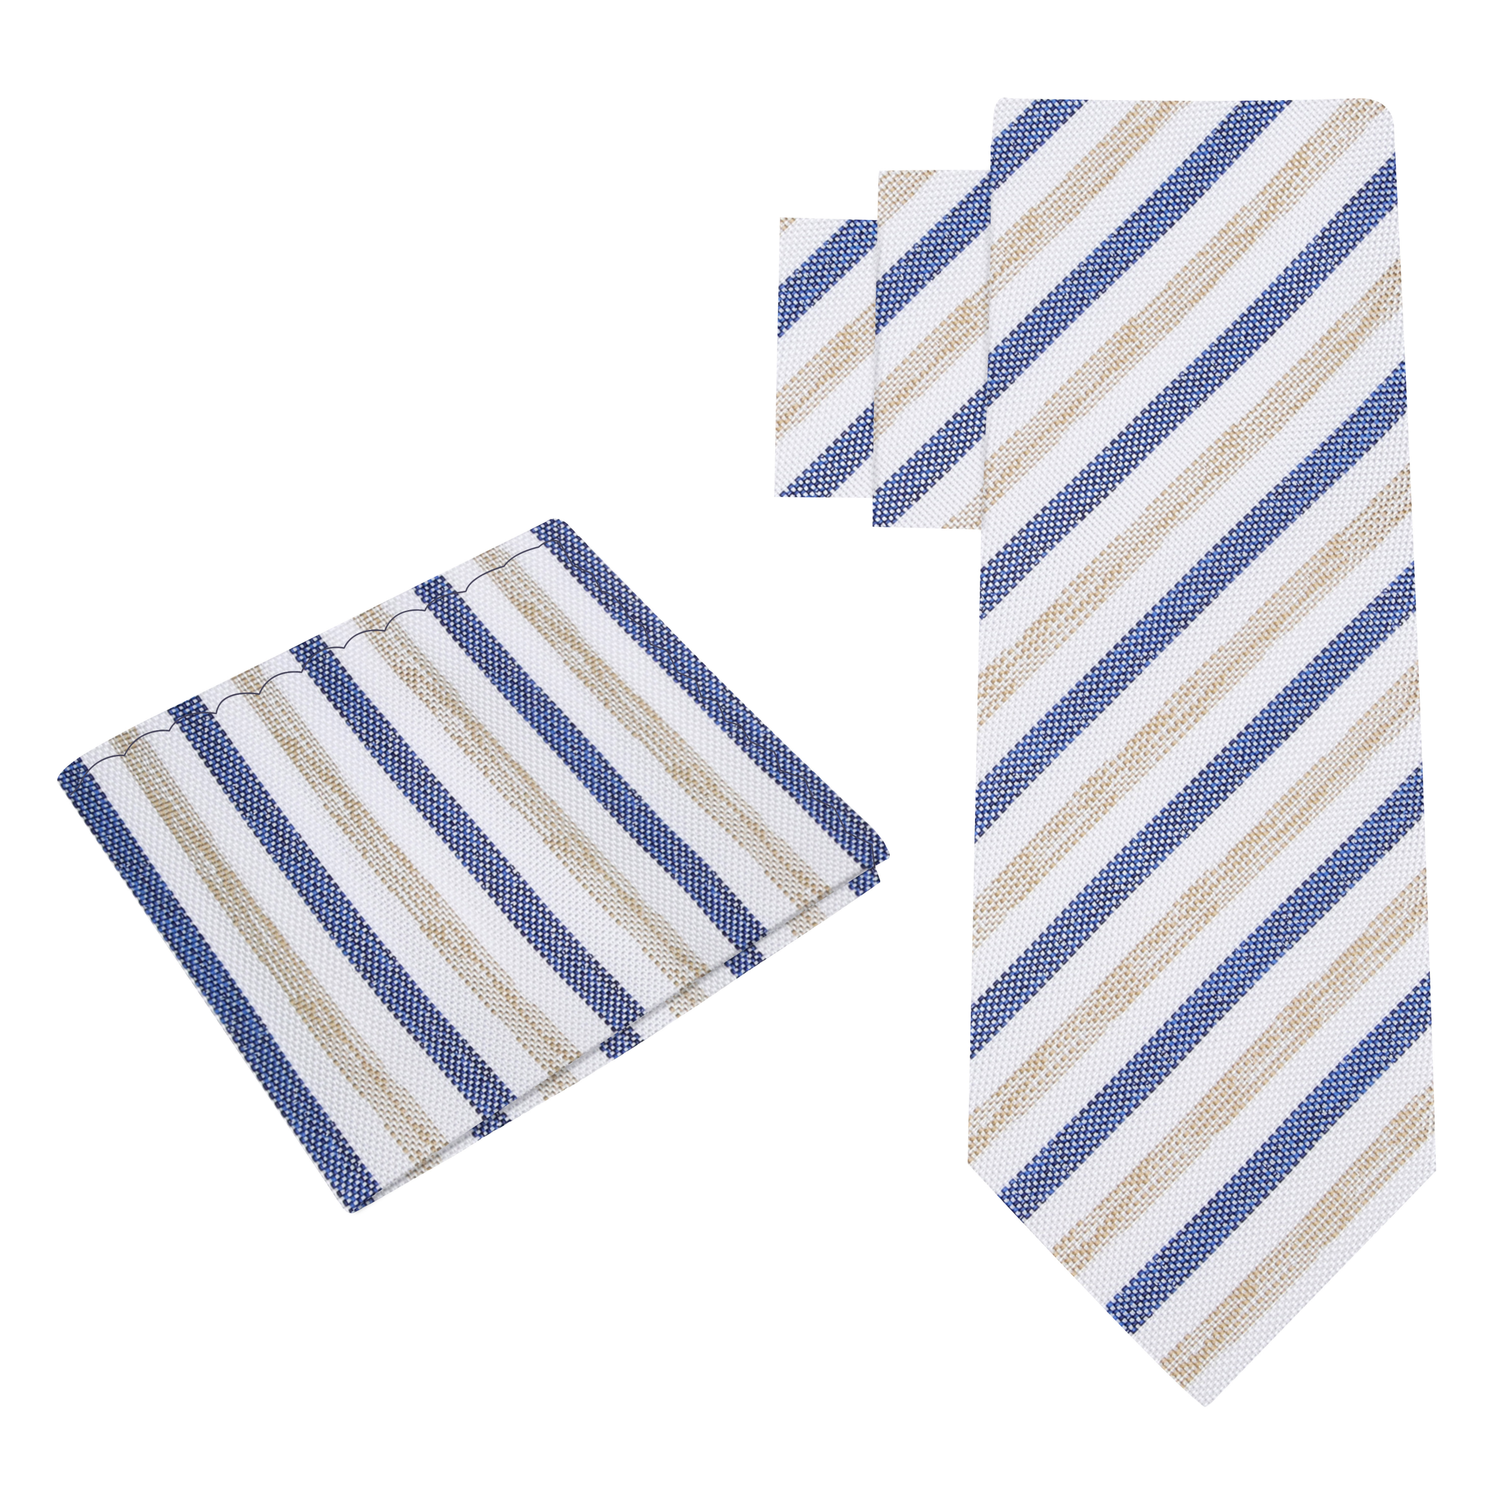 Alt View: White, Dark Blue, Light Brown Stripe Necktie with Cream and Square